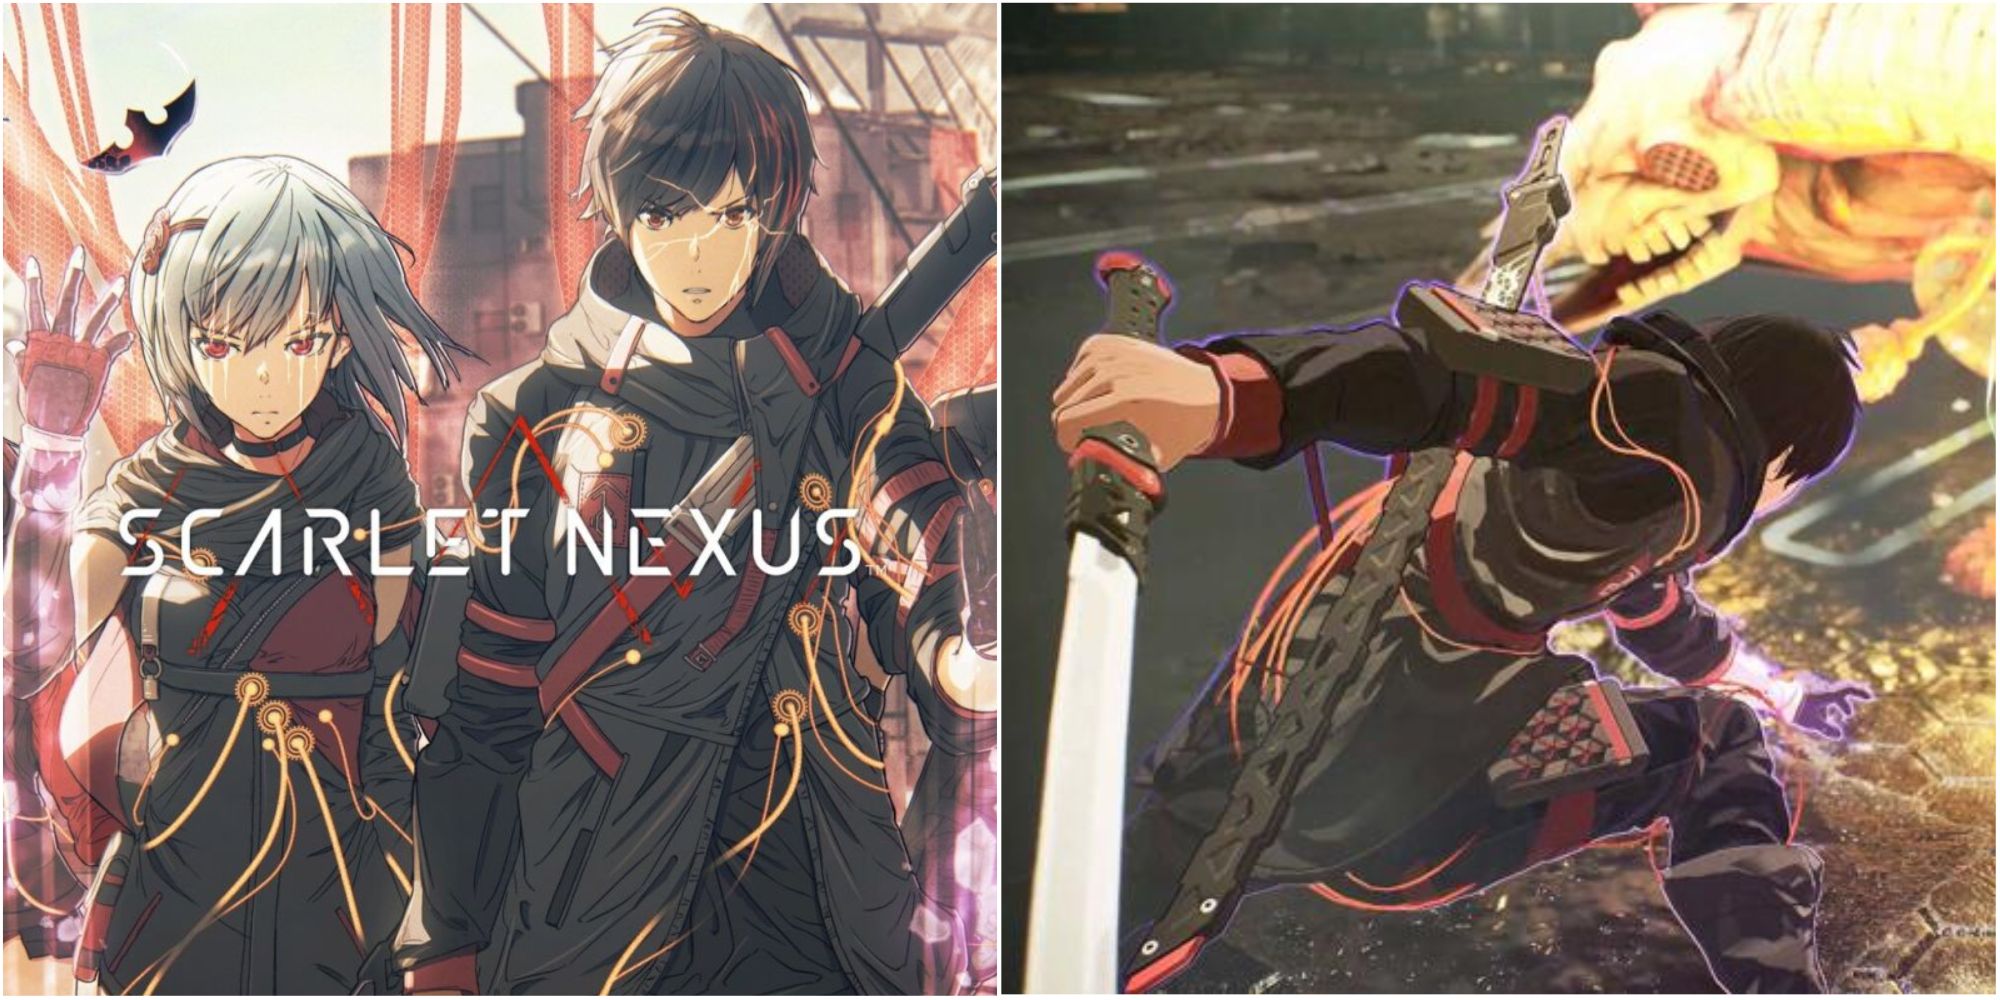 scarlet nexus cover & gameplay